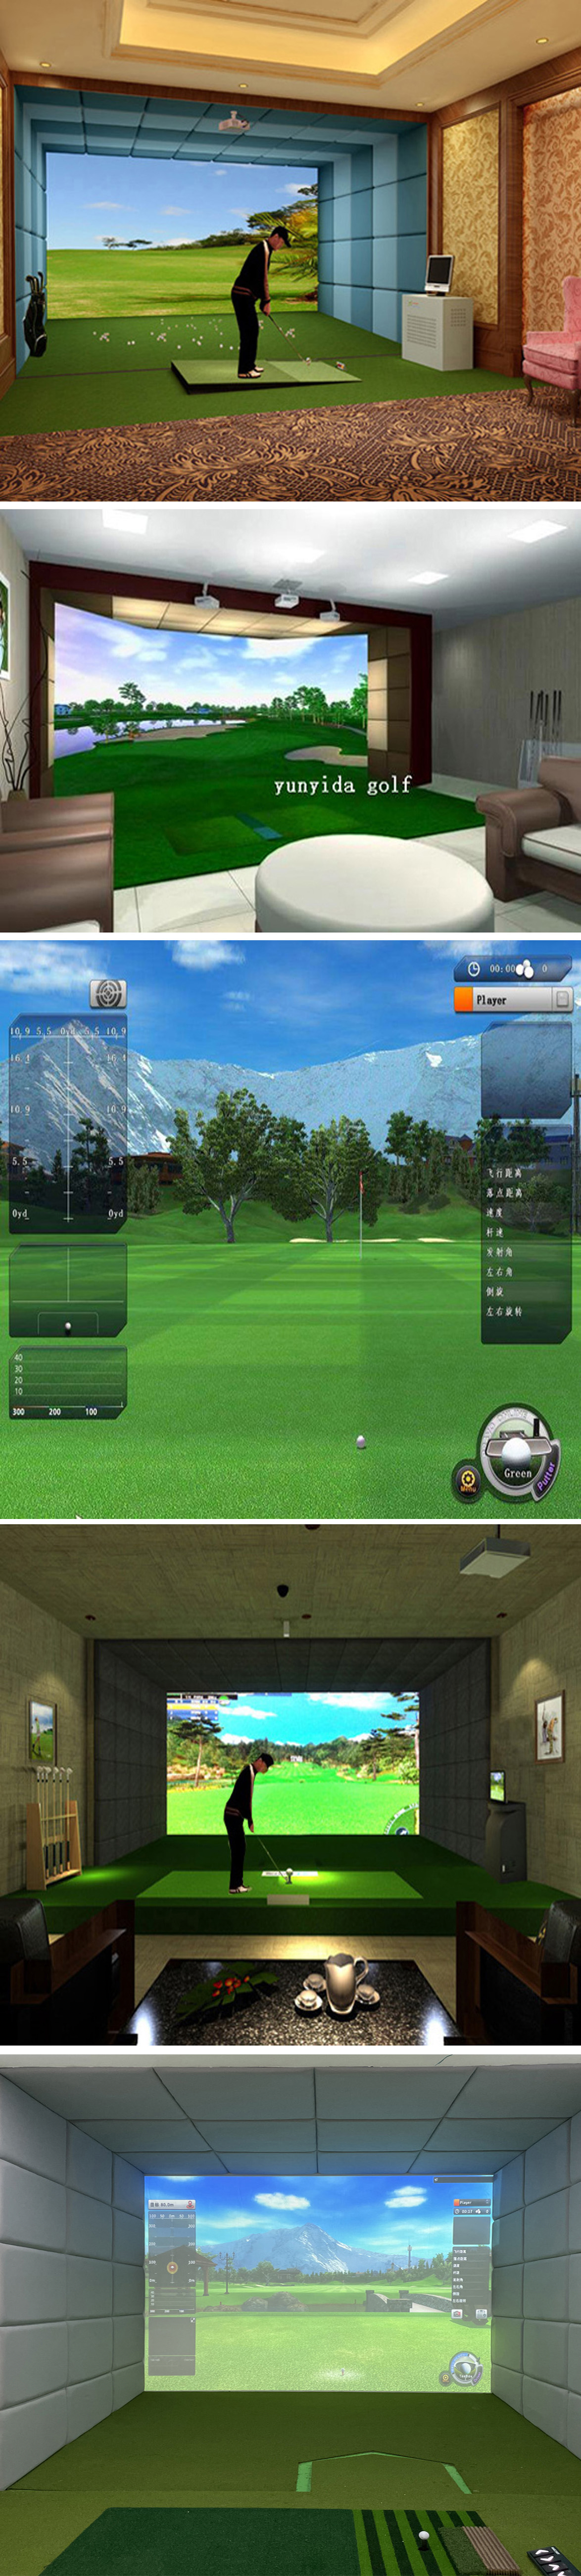 高尔夫室内模拟设备技术 三.jpg